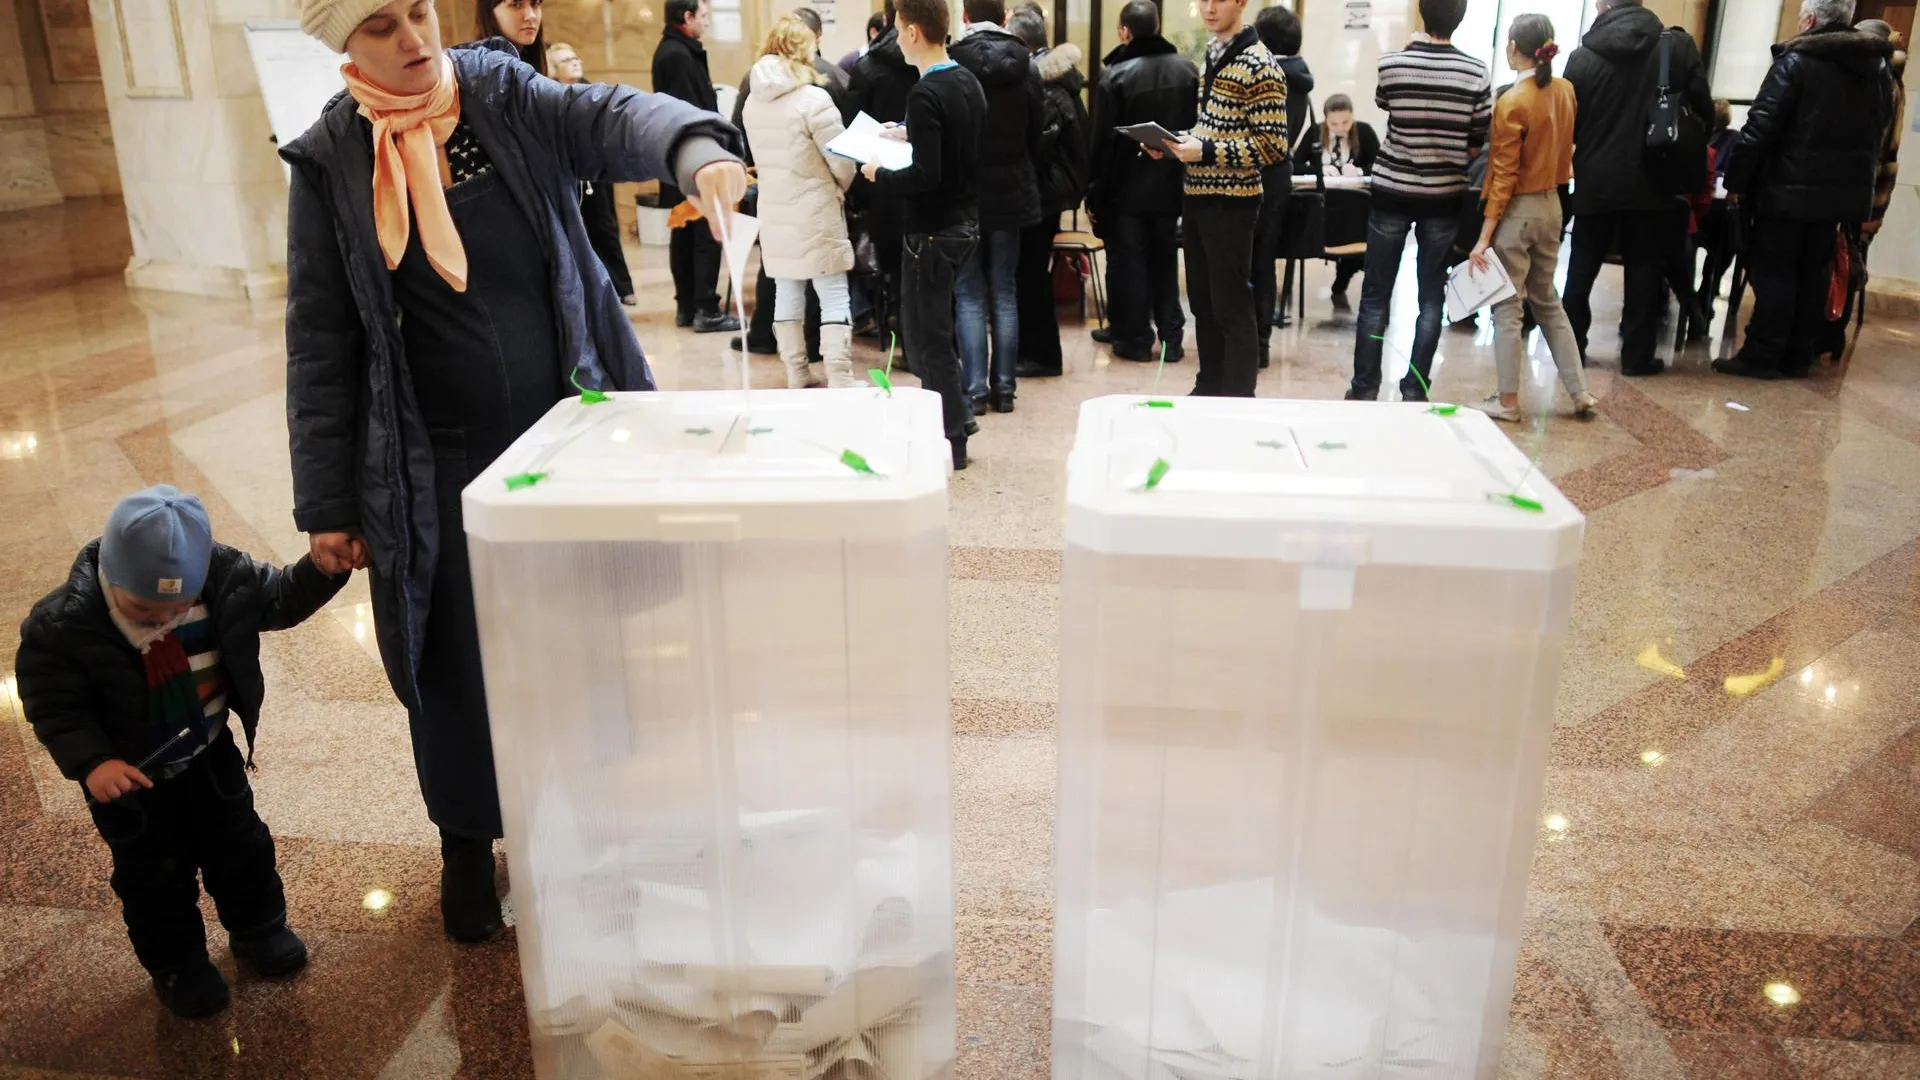 Явка на выборы мэра Химок составила 27,8% — избирком